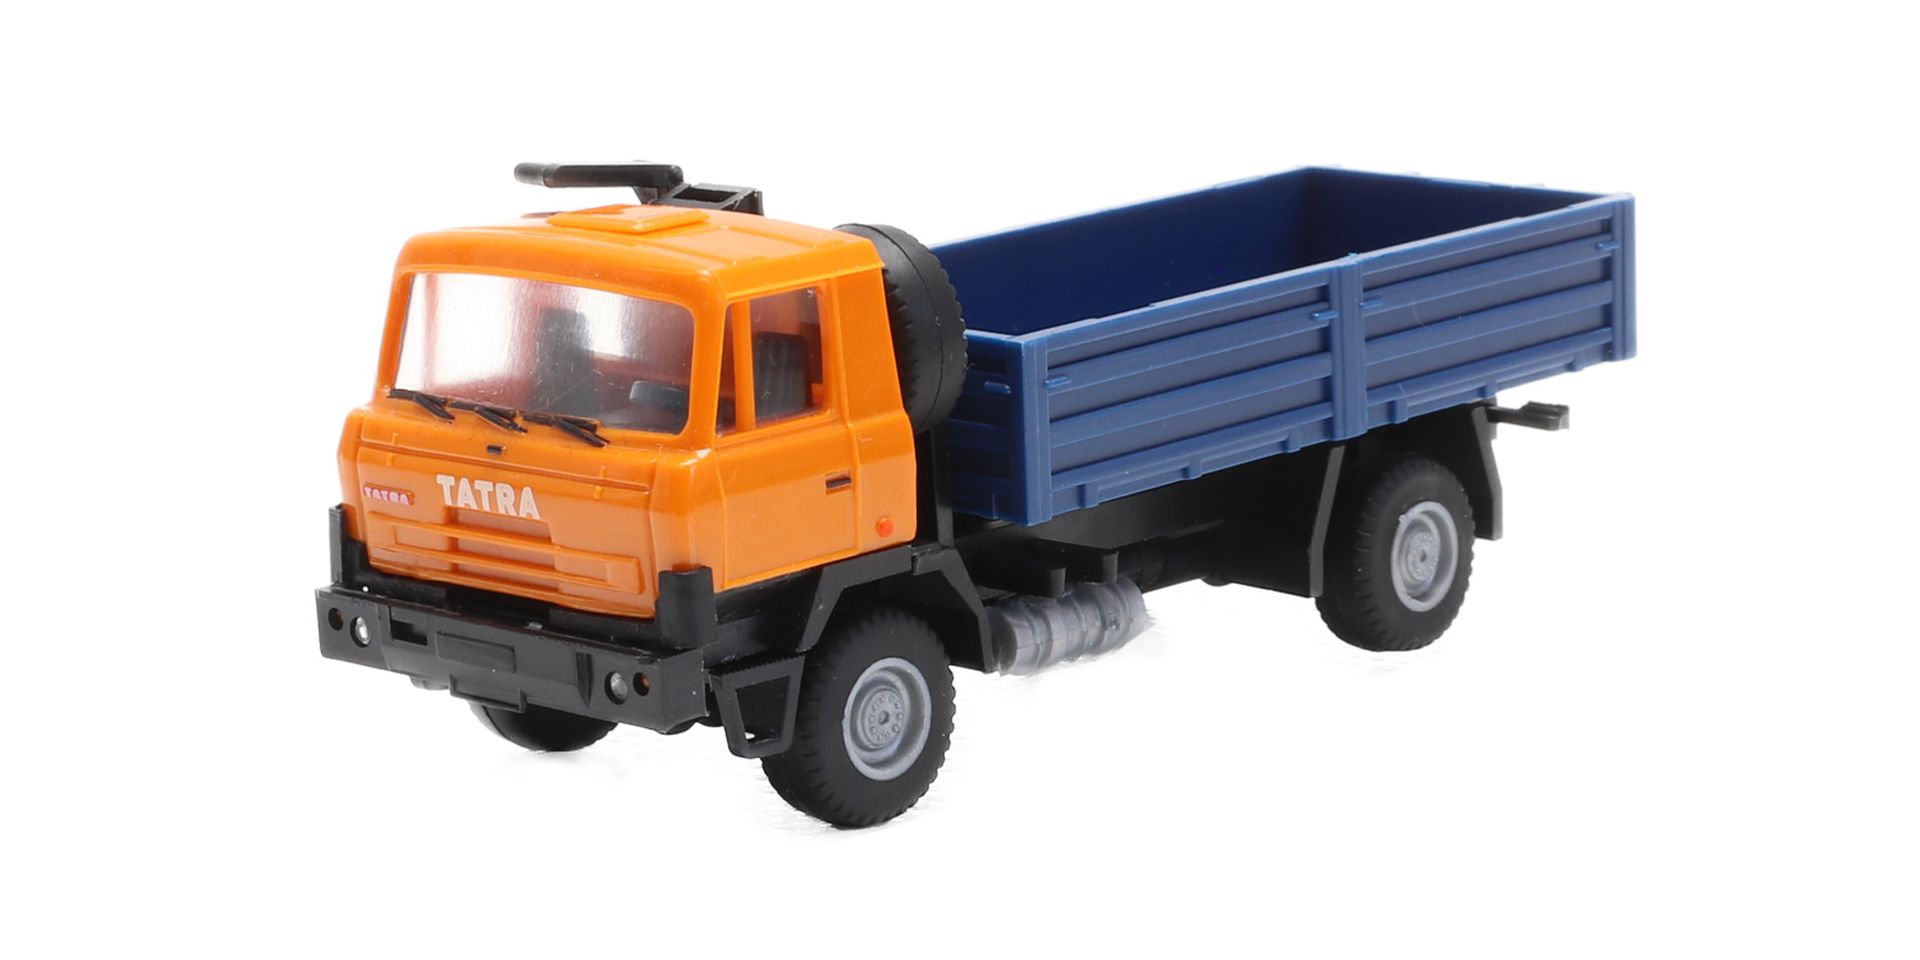 igra 66818170 - Tatra 815 4x4 orange / blau Pritsche, Bausatz